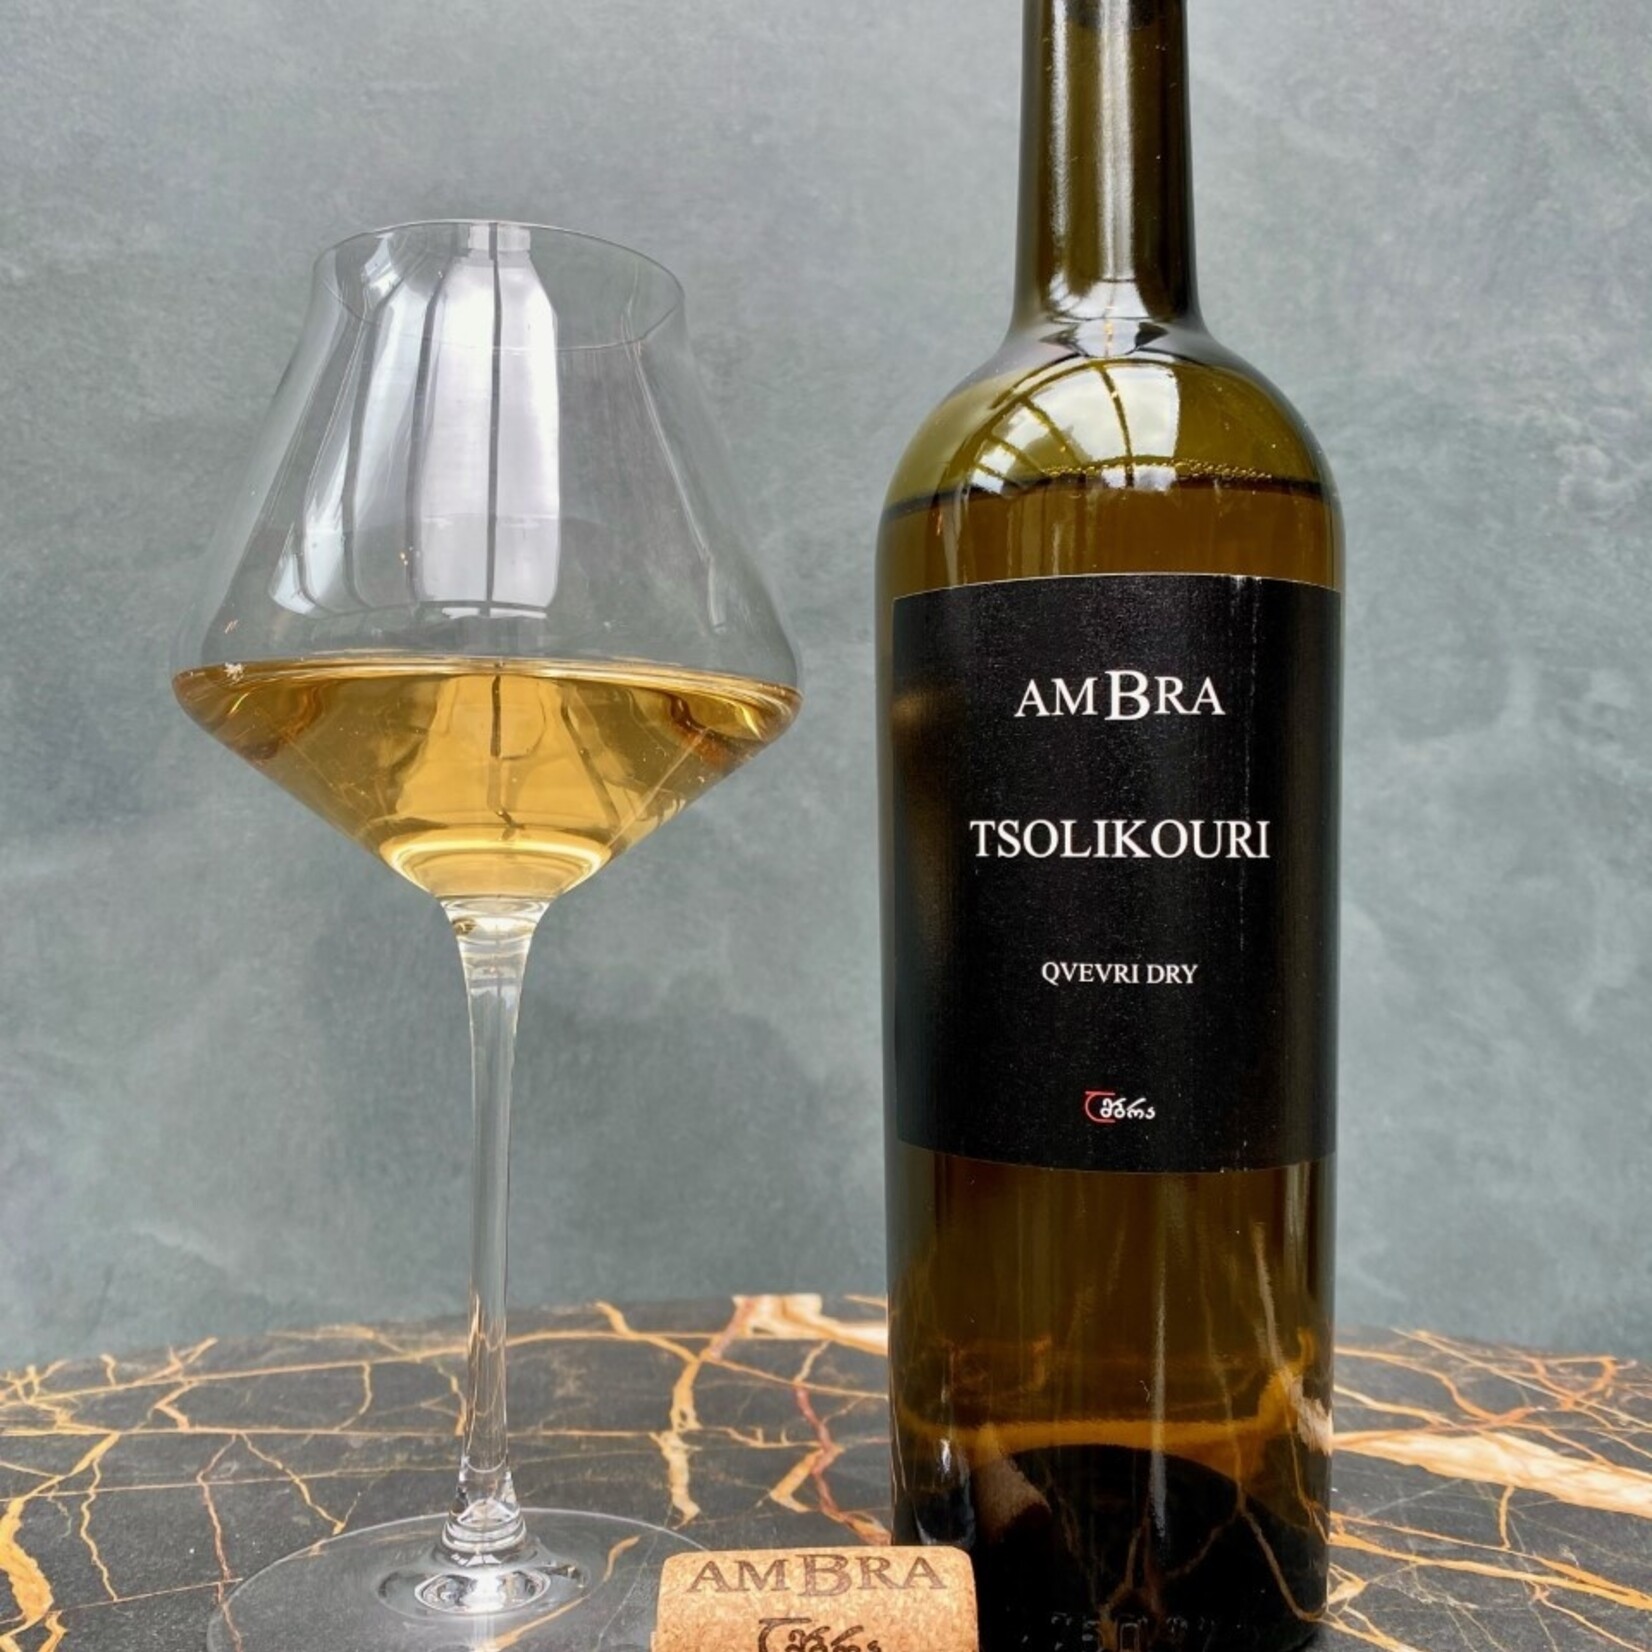 Tsolikouri AMBRA Qvevri, dry light amber wine